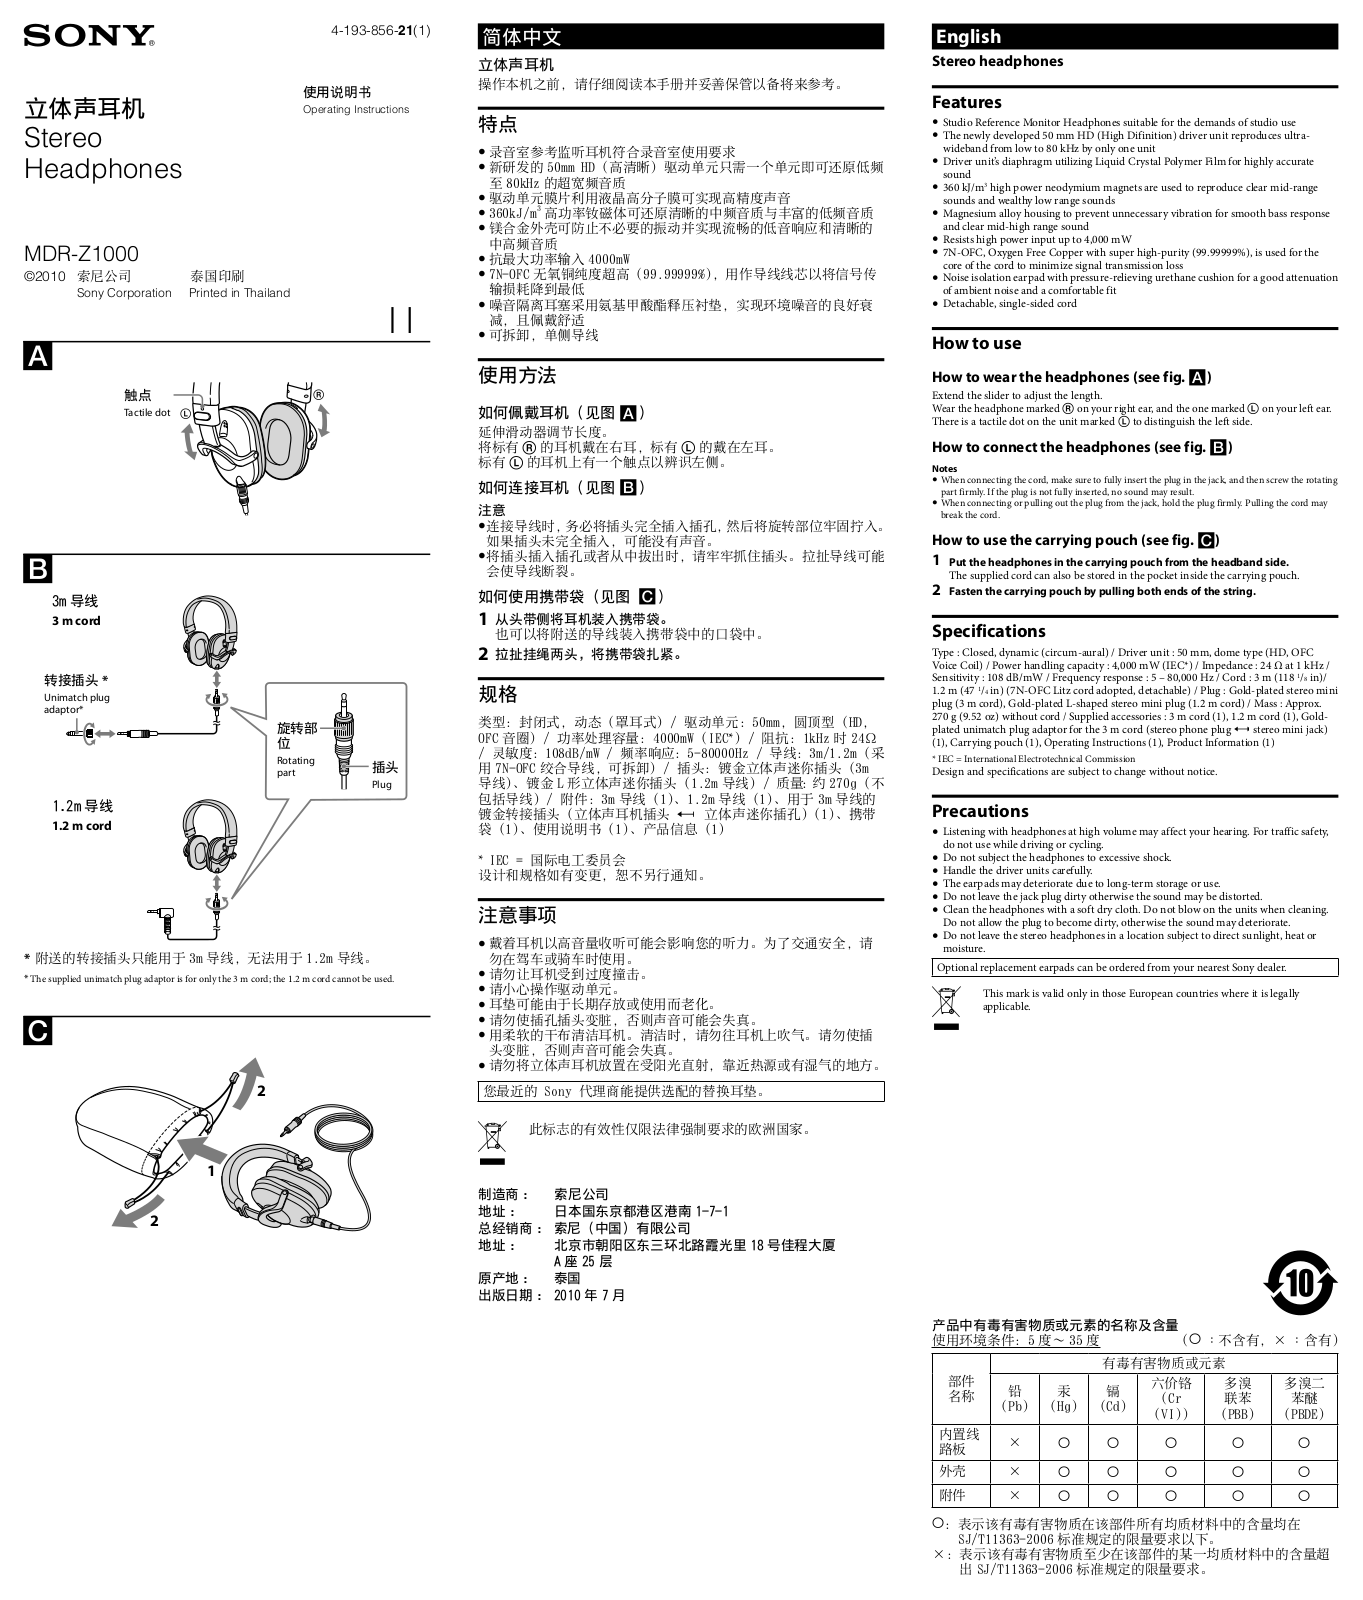 SONY MDR-Z1000 User Manual